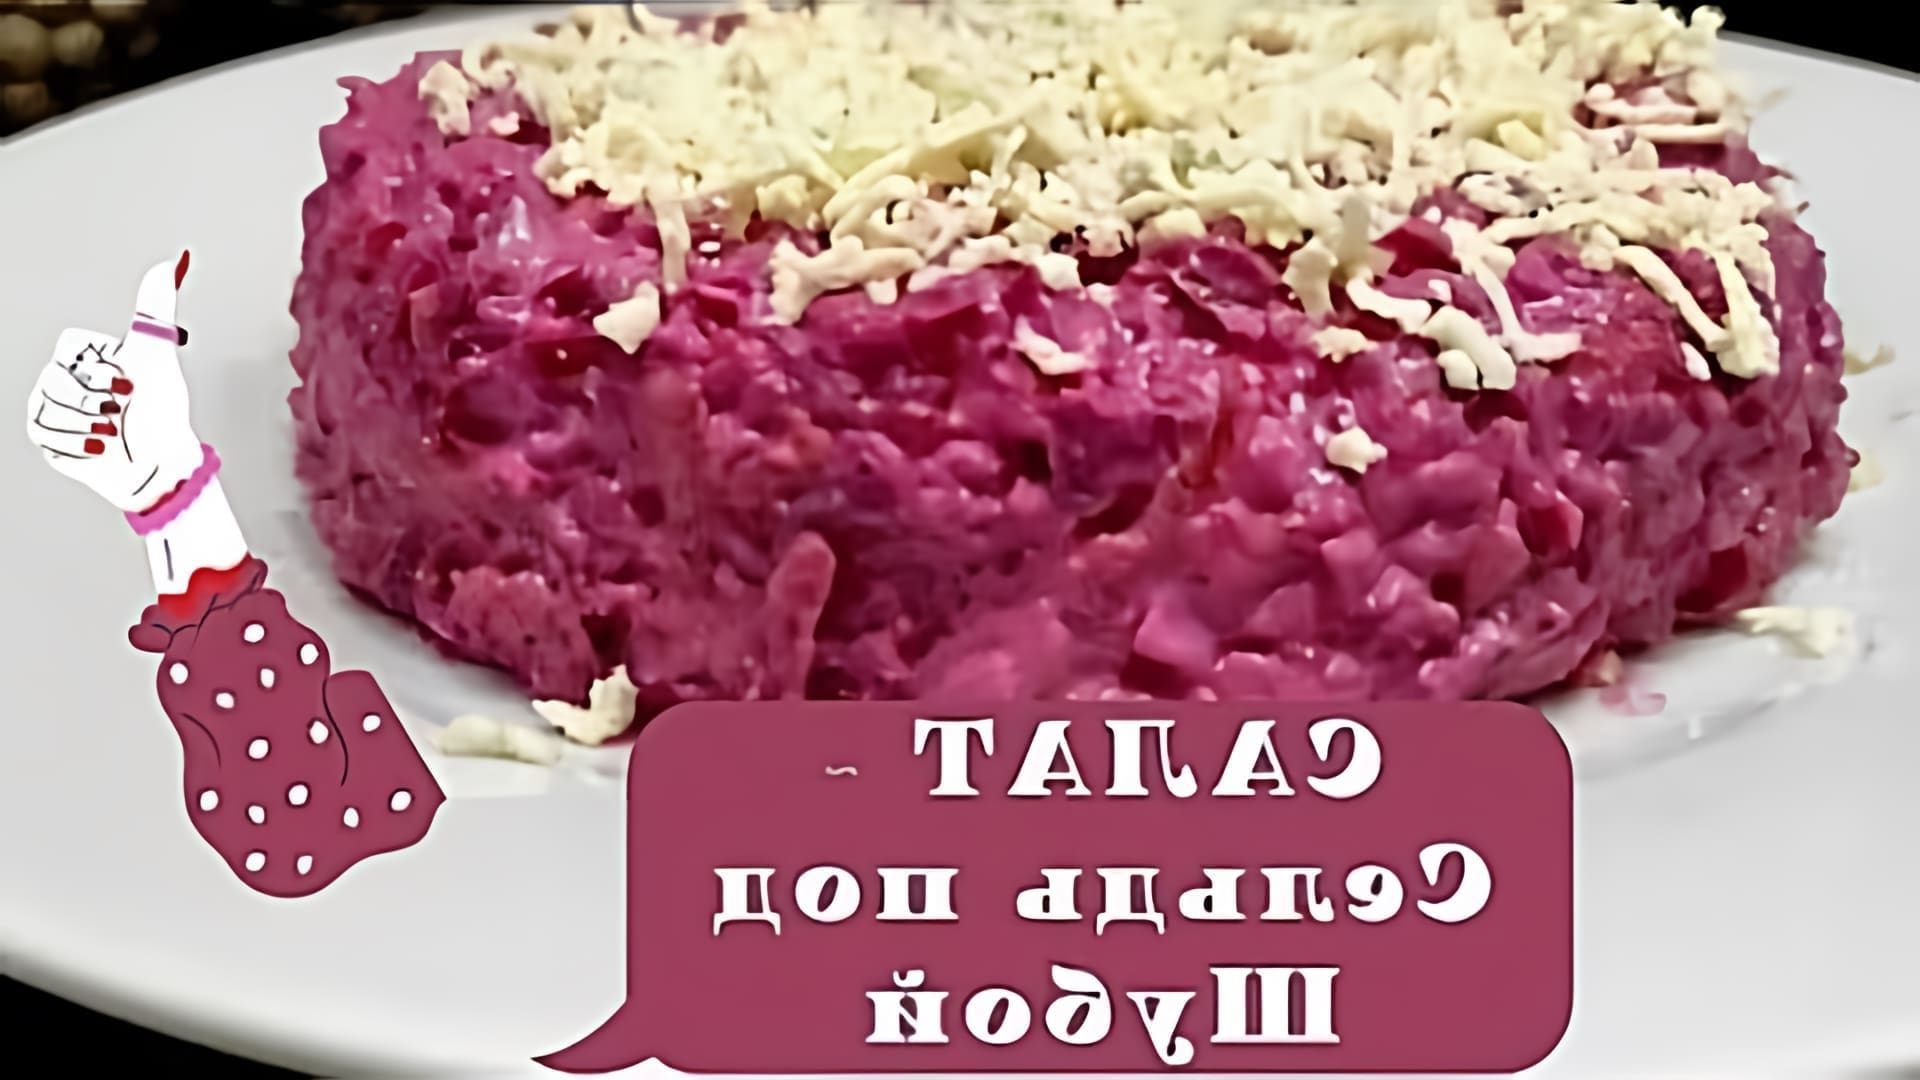 В этом видео демонстрируется рецепт приготовления салата "Сельдь под шубой" или "Ленивая шуба"